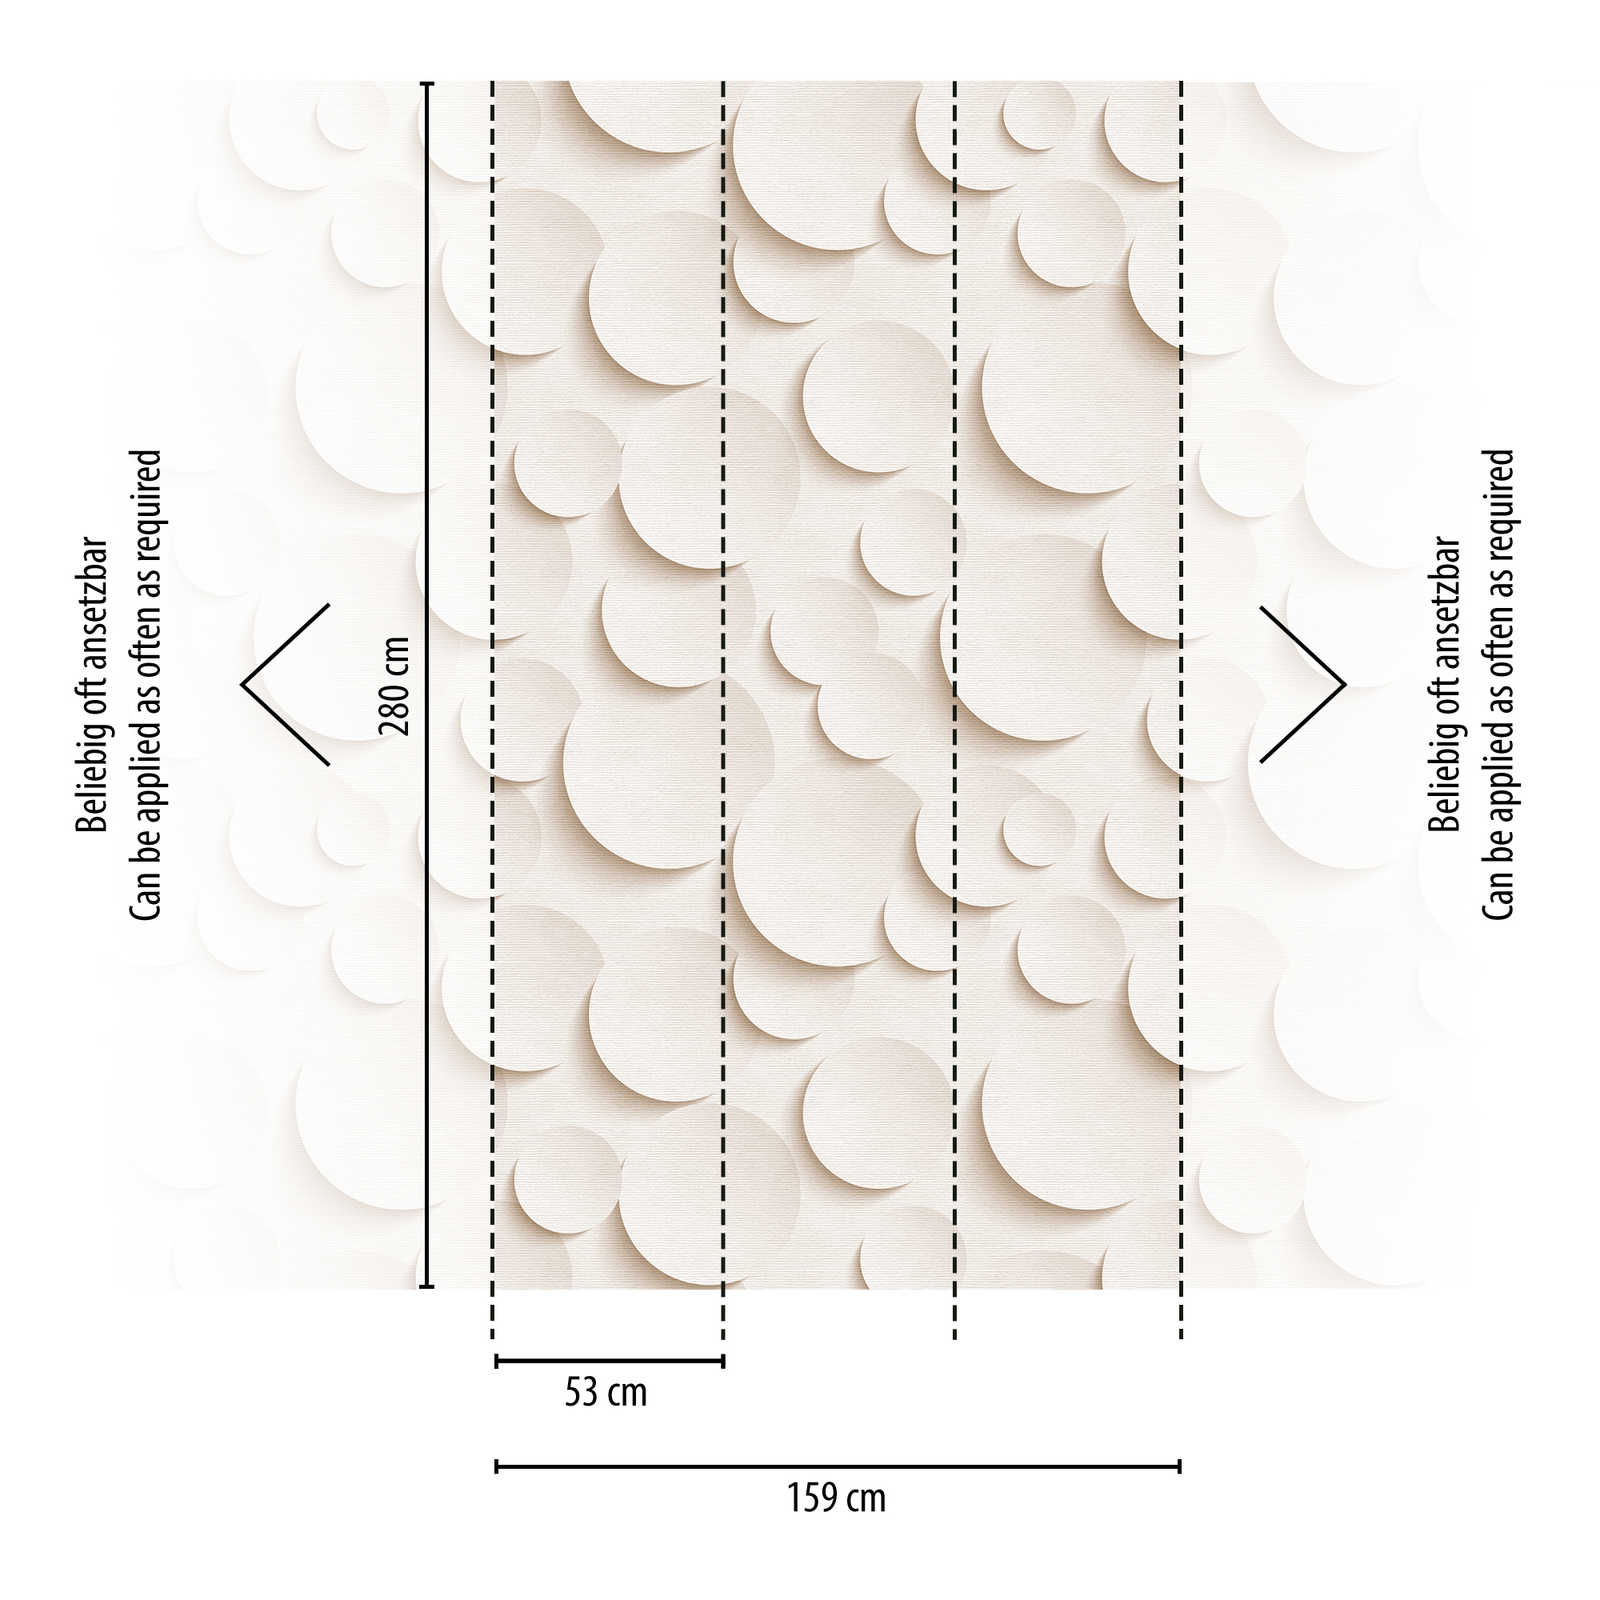             Wallpaper novelty - motif wallpaper 3D dots, plain with paper effect
        